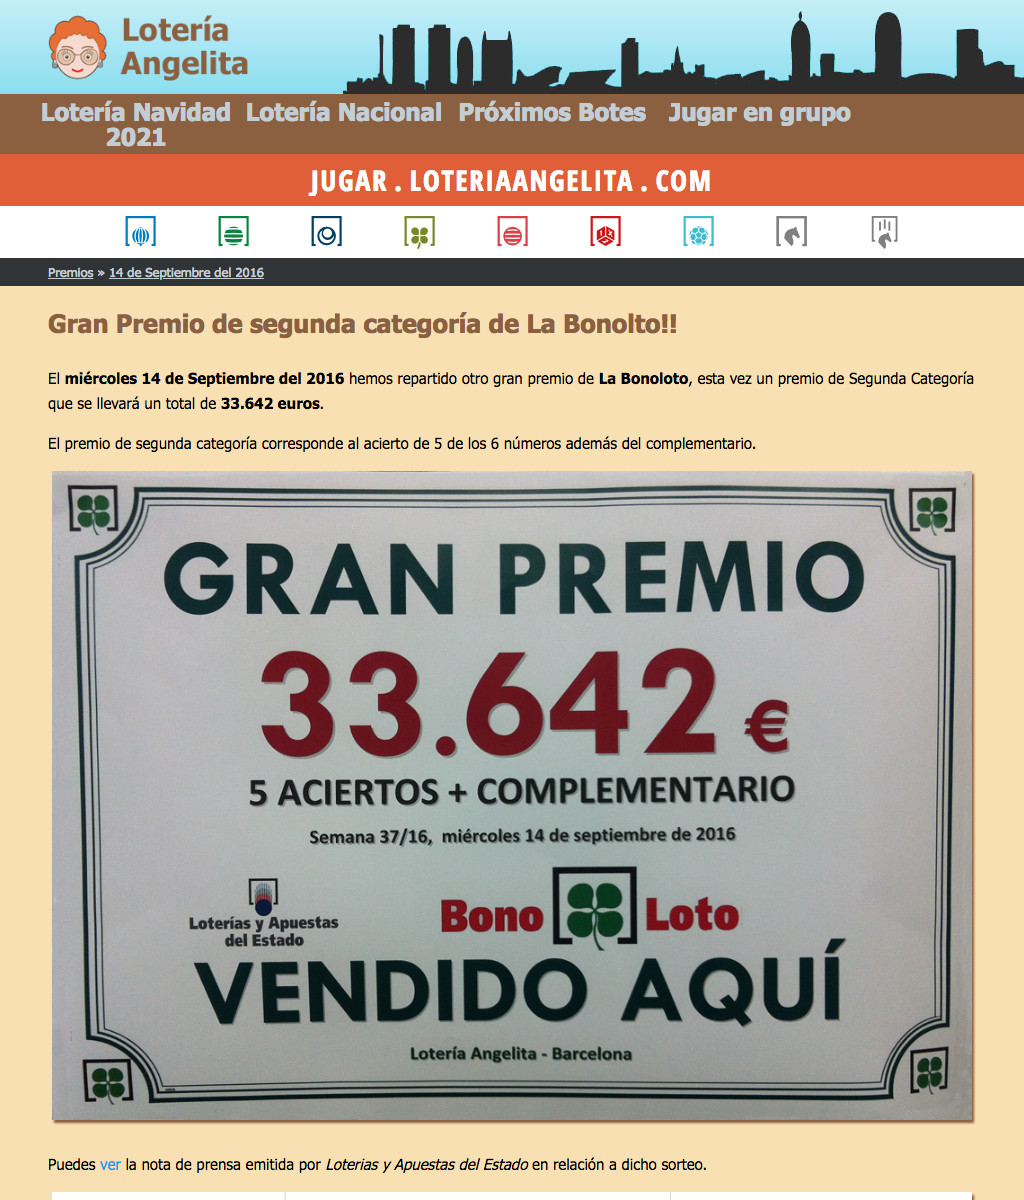 Gran premio de la Bonoloto, vendido aquí, en Lotería Angelita.